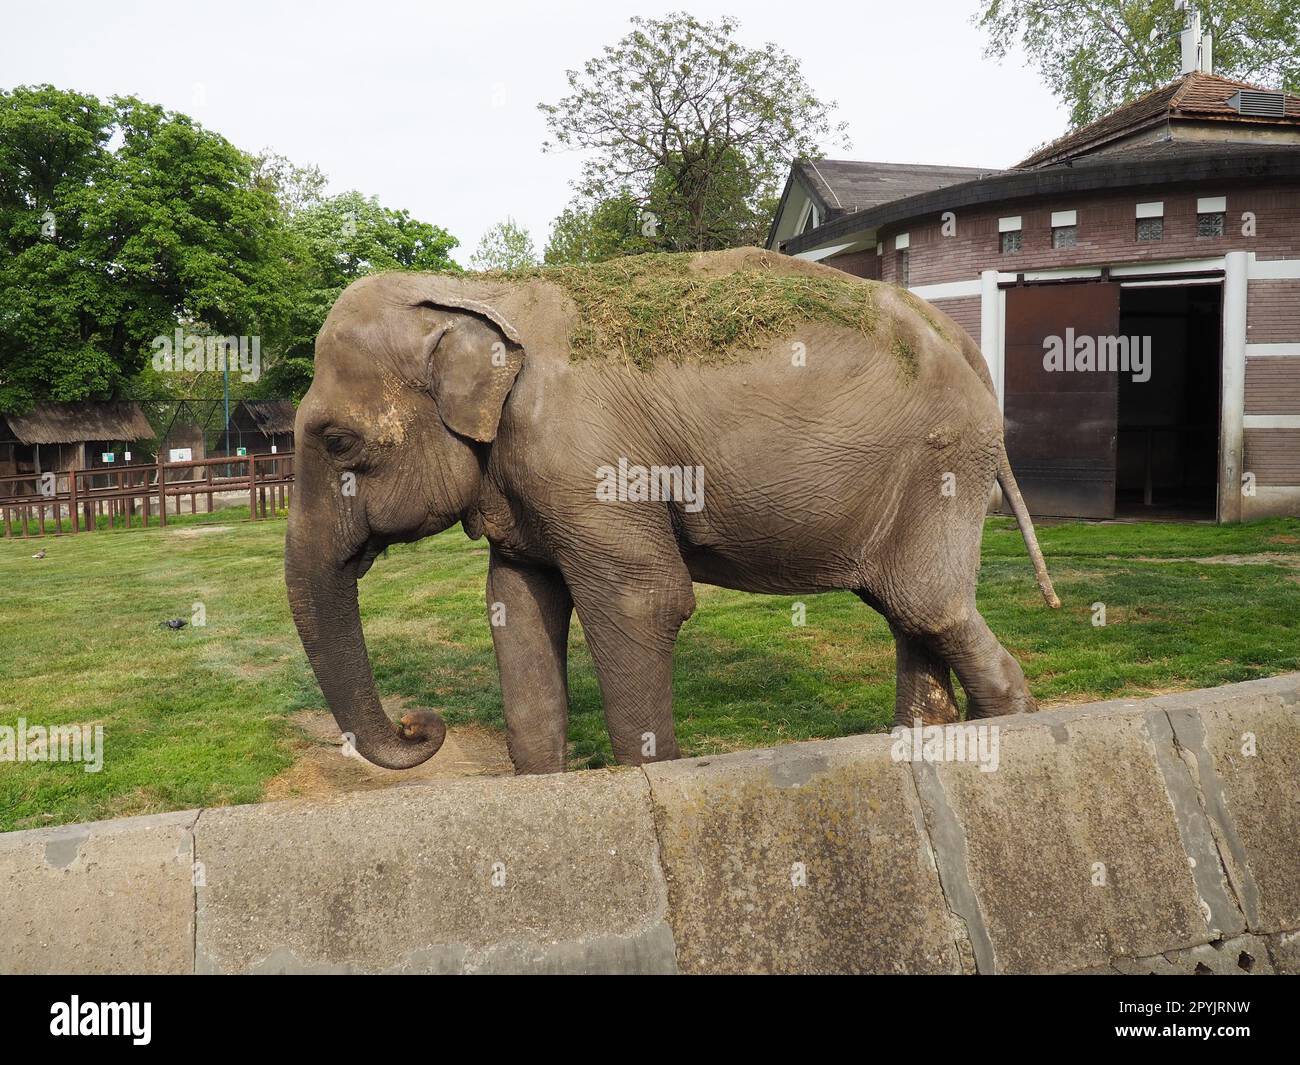 Der asiatische Elefant, oder indischer Elefant, Elephas maximus, ist ein Säugetier der Proboscis-Ordnung, eine Gattung asiatischer Elefanten Elephas und eine von drei modernen Arten der Elefantenfamilie. Elefanten gehen Stockfoto